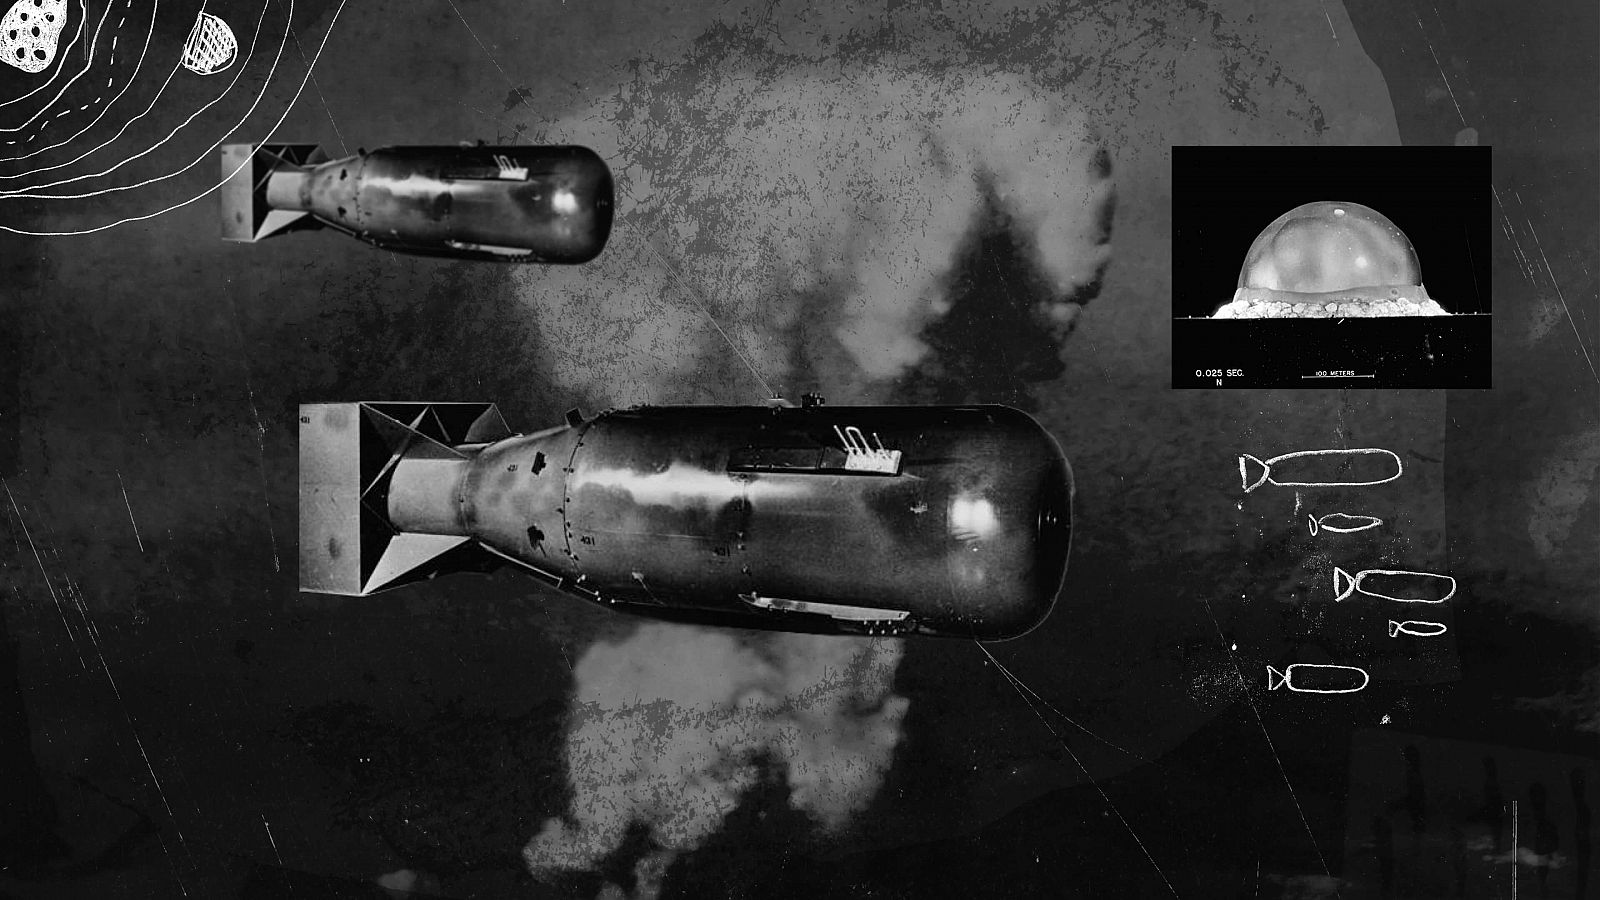  Imagen: Diseño gráfico sobre armas nucleares en fondo negro